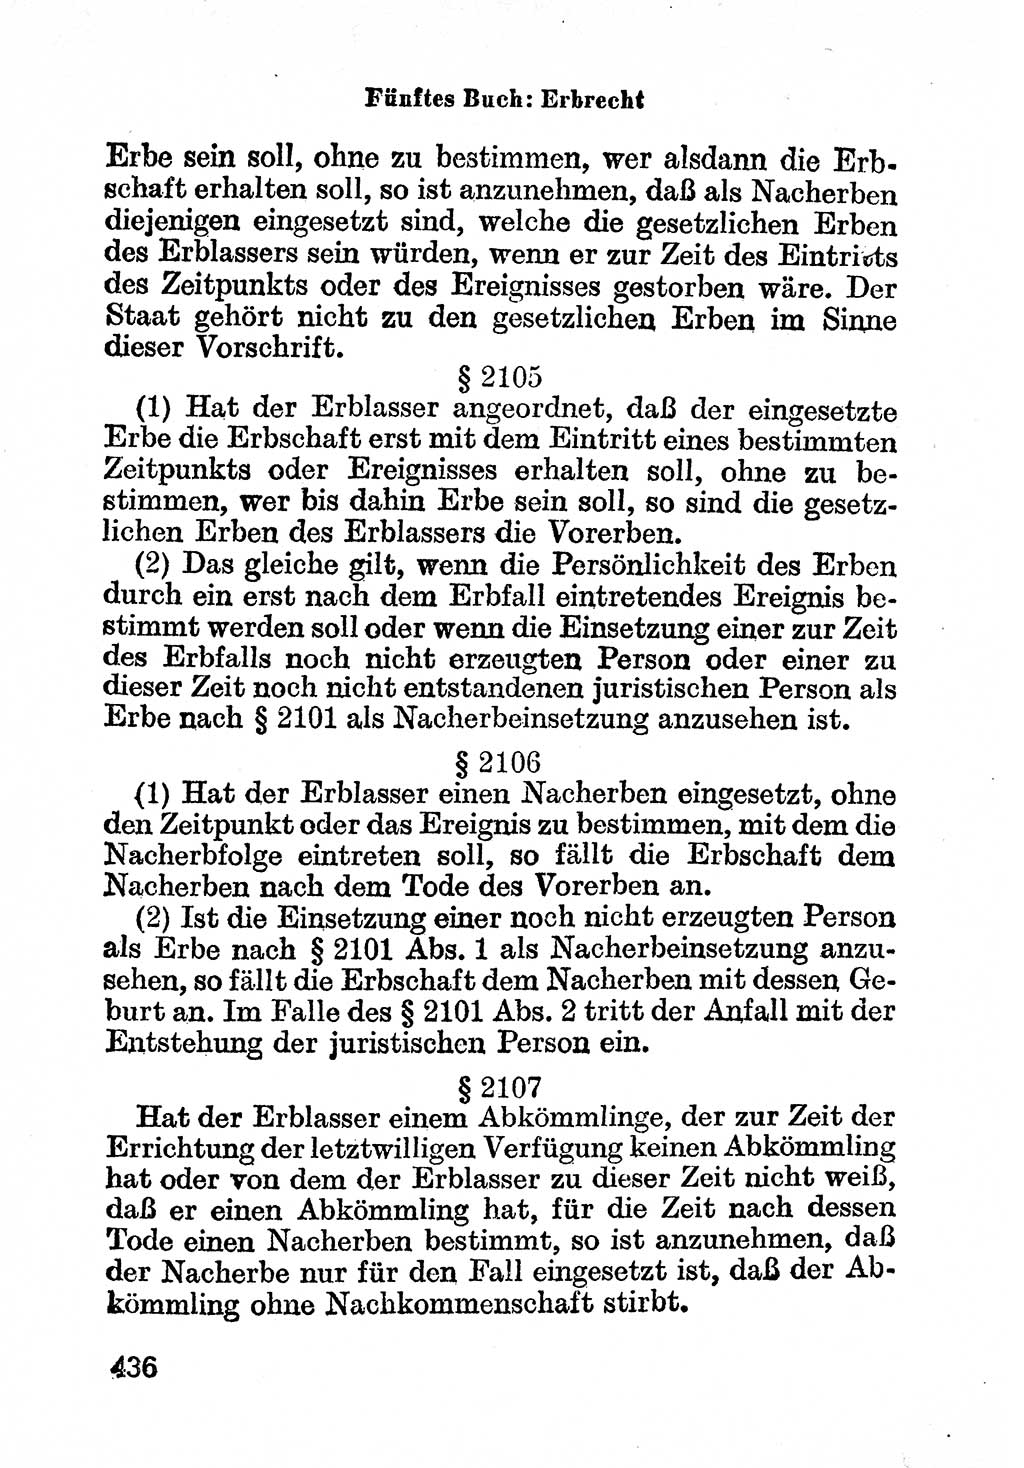 Bürgerliches Gesetzbuch (BGB) nebst wichtigen Nebengesetzen [Deutsche Demokratische Republik (DDR)] 1956, Seite 436 (BGB Nebenges. DDR 1956, S. 436)